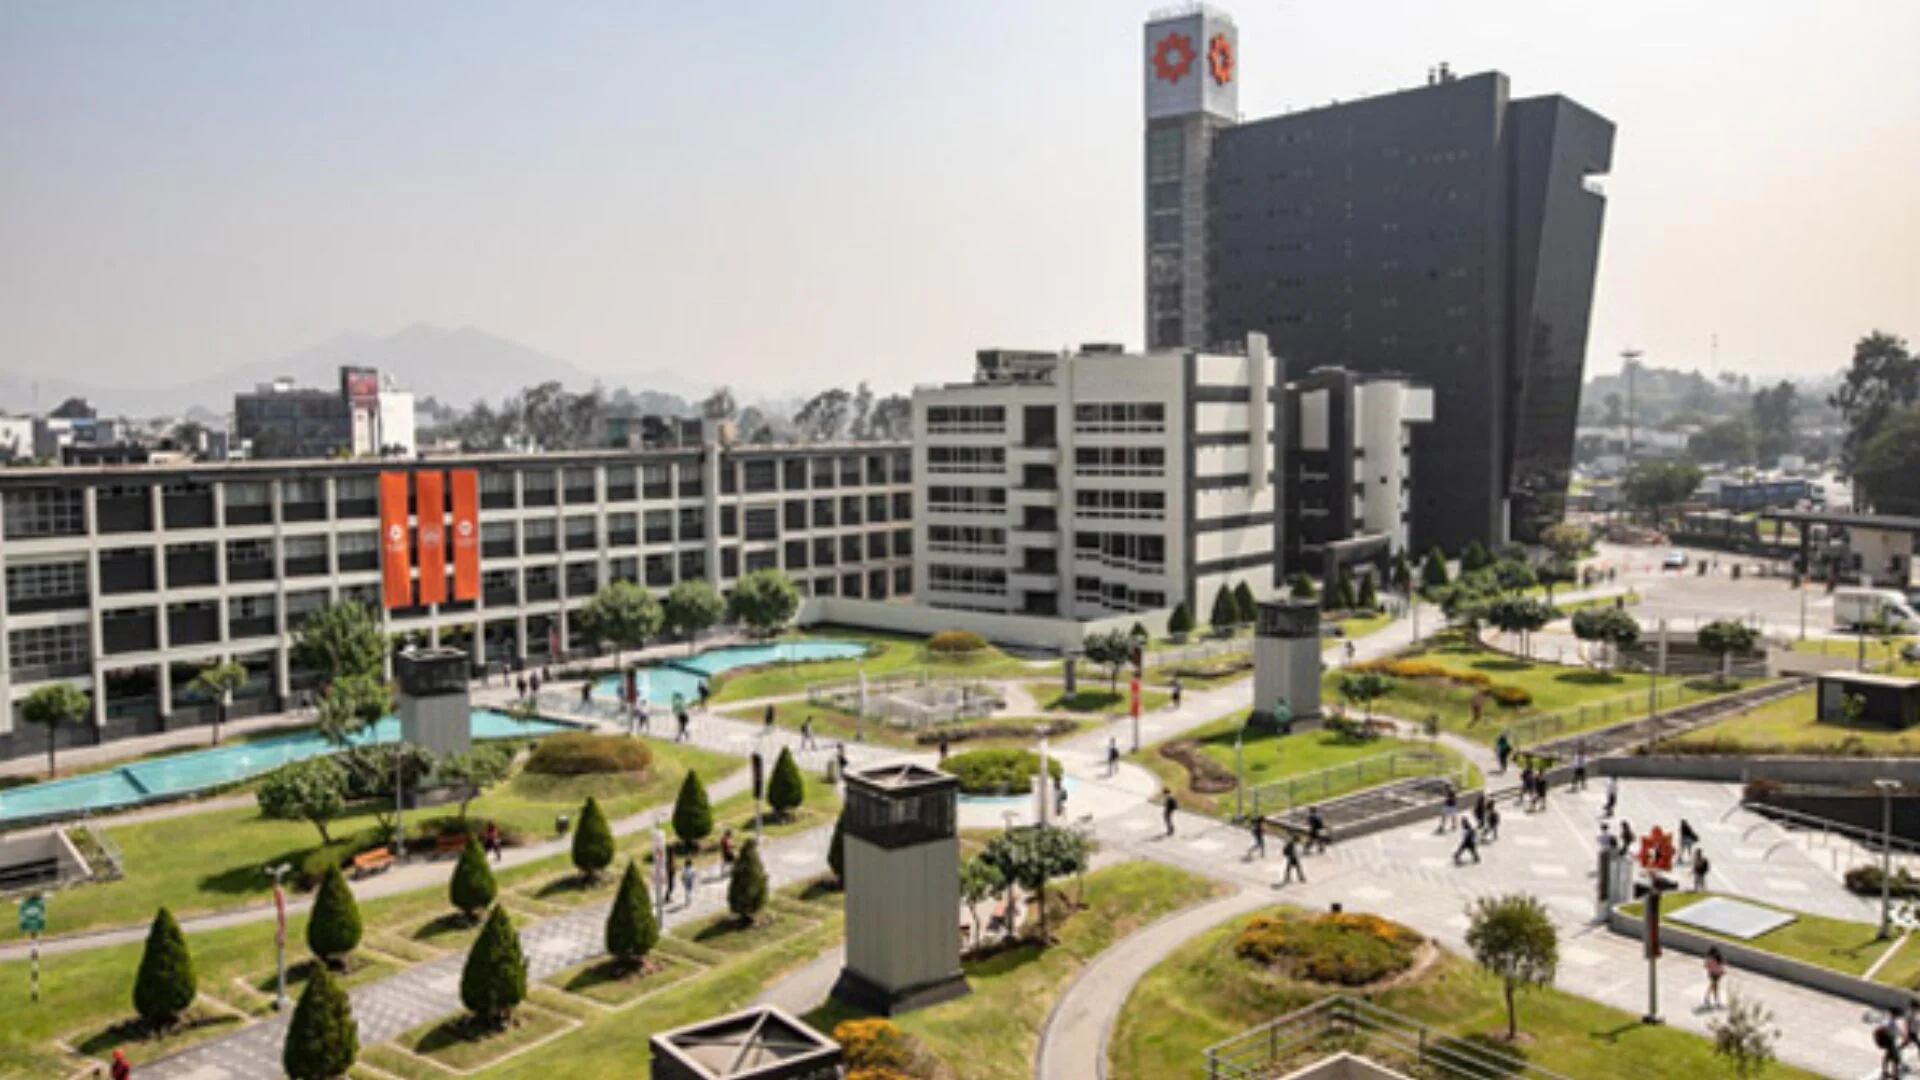 Confuso accidente en la Universidad de Lima: Reportan que joven cayó desde lo alto de pabellón